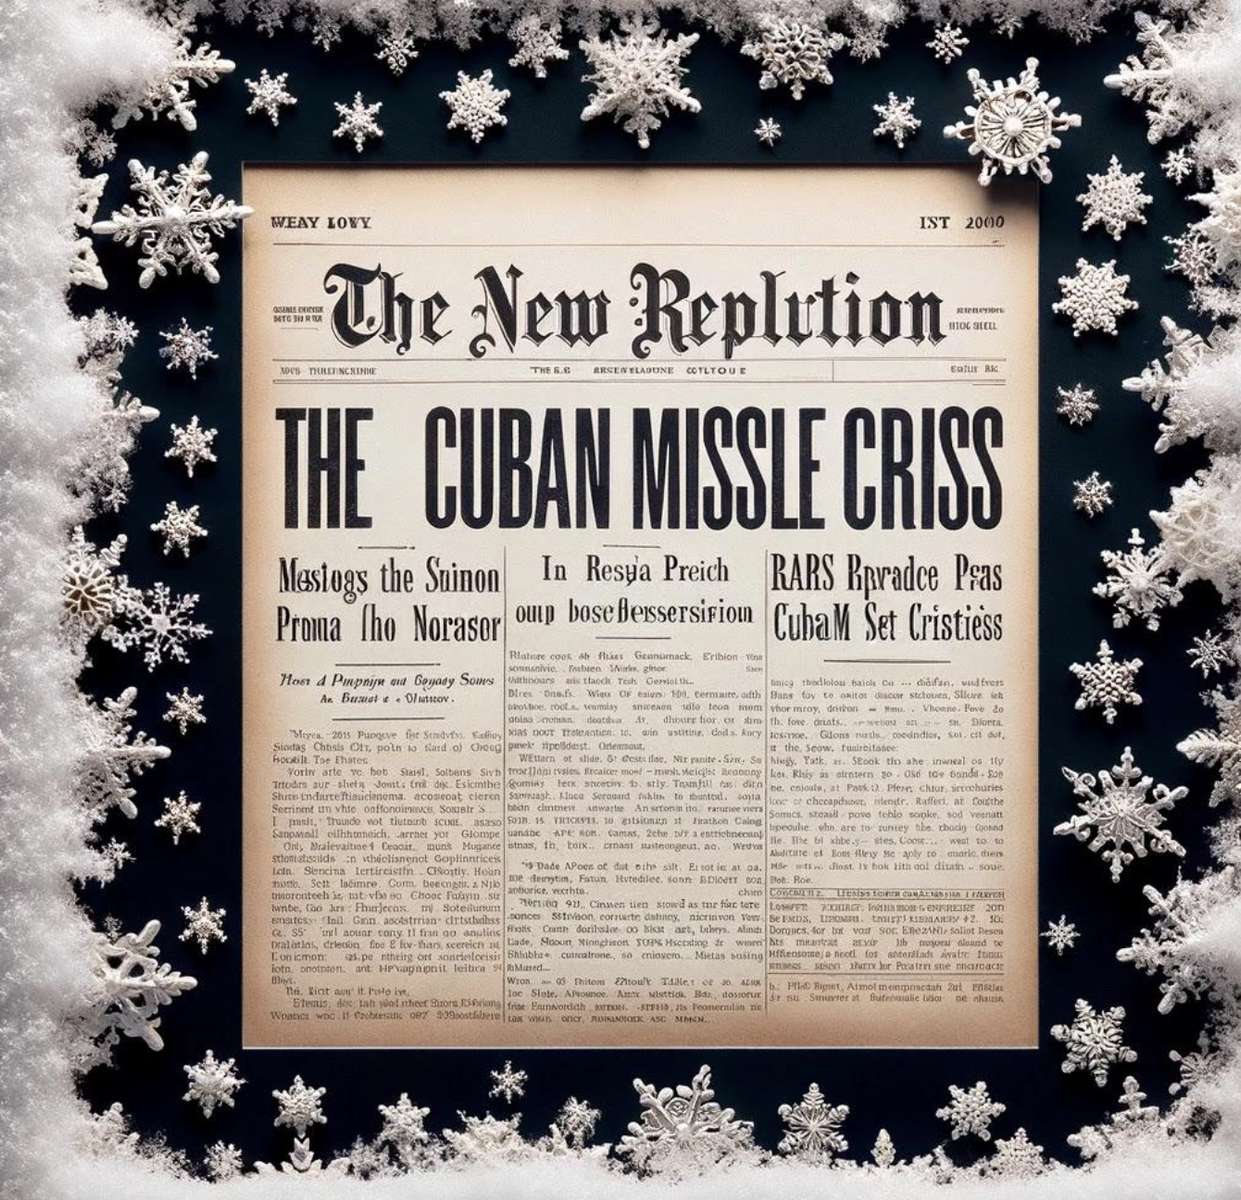 Crisis de los misiles cubanos de los años 60. puzzle online a partir de foto